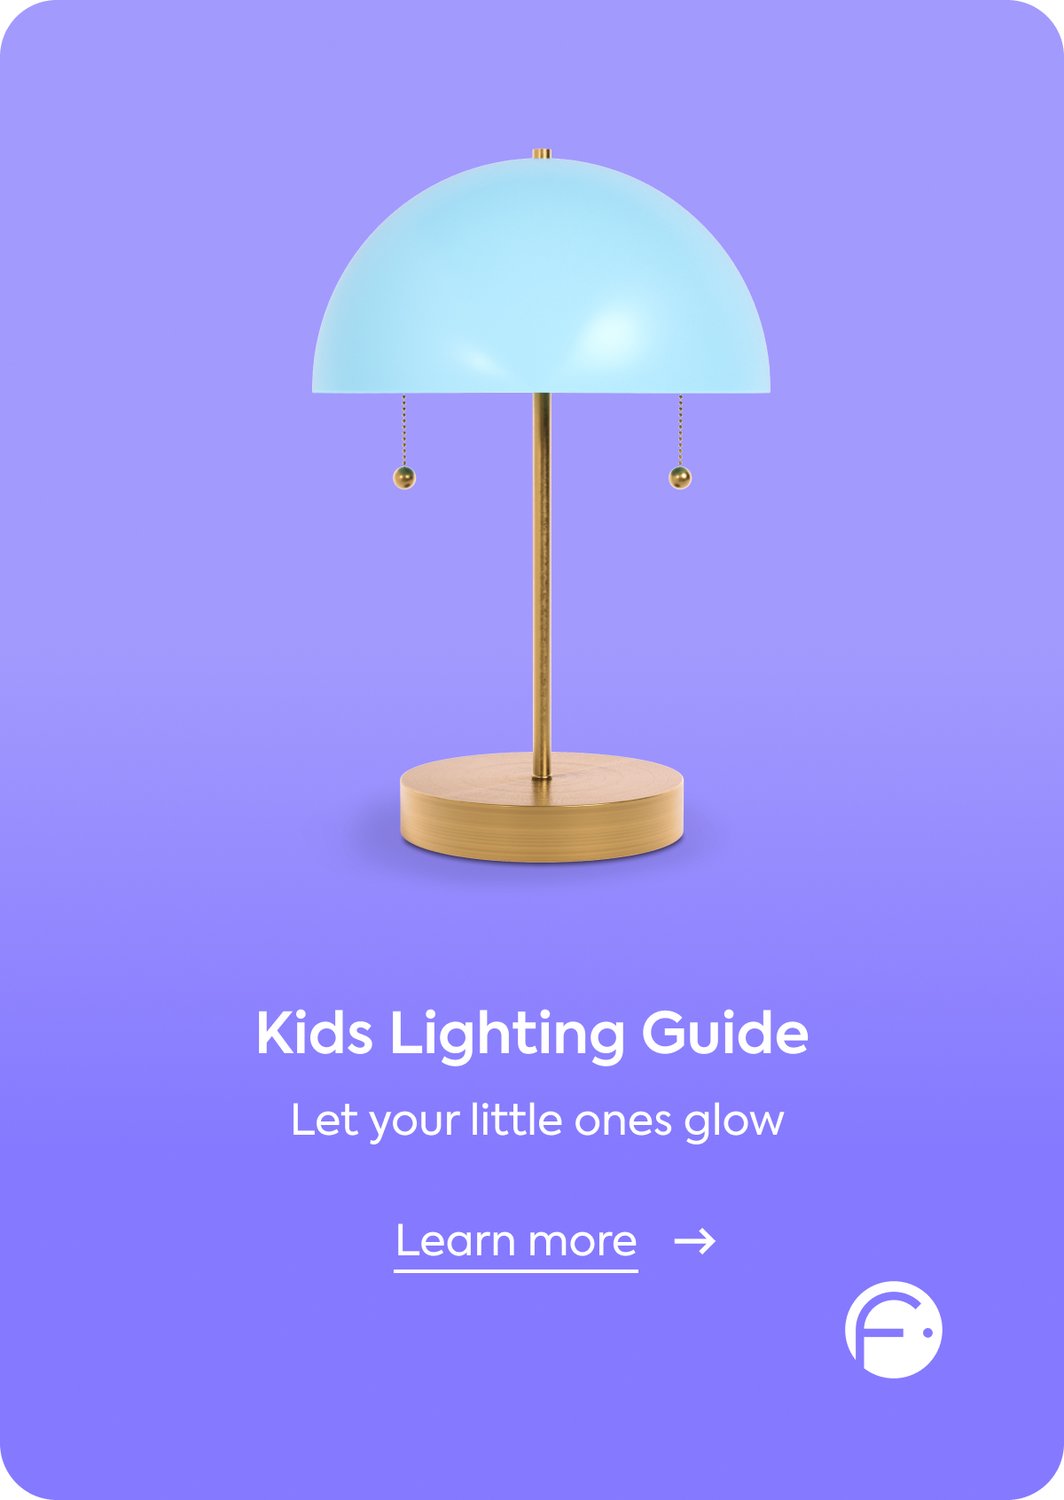 Learn more at /decor/kids-lighting/kdltg#guide